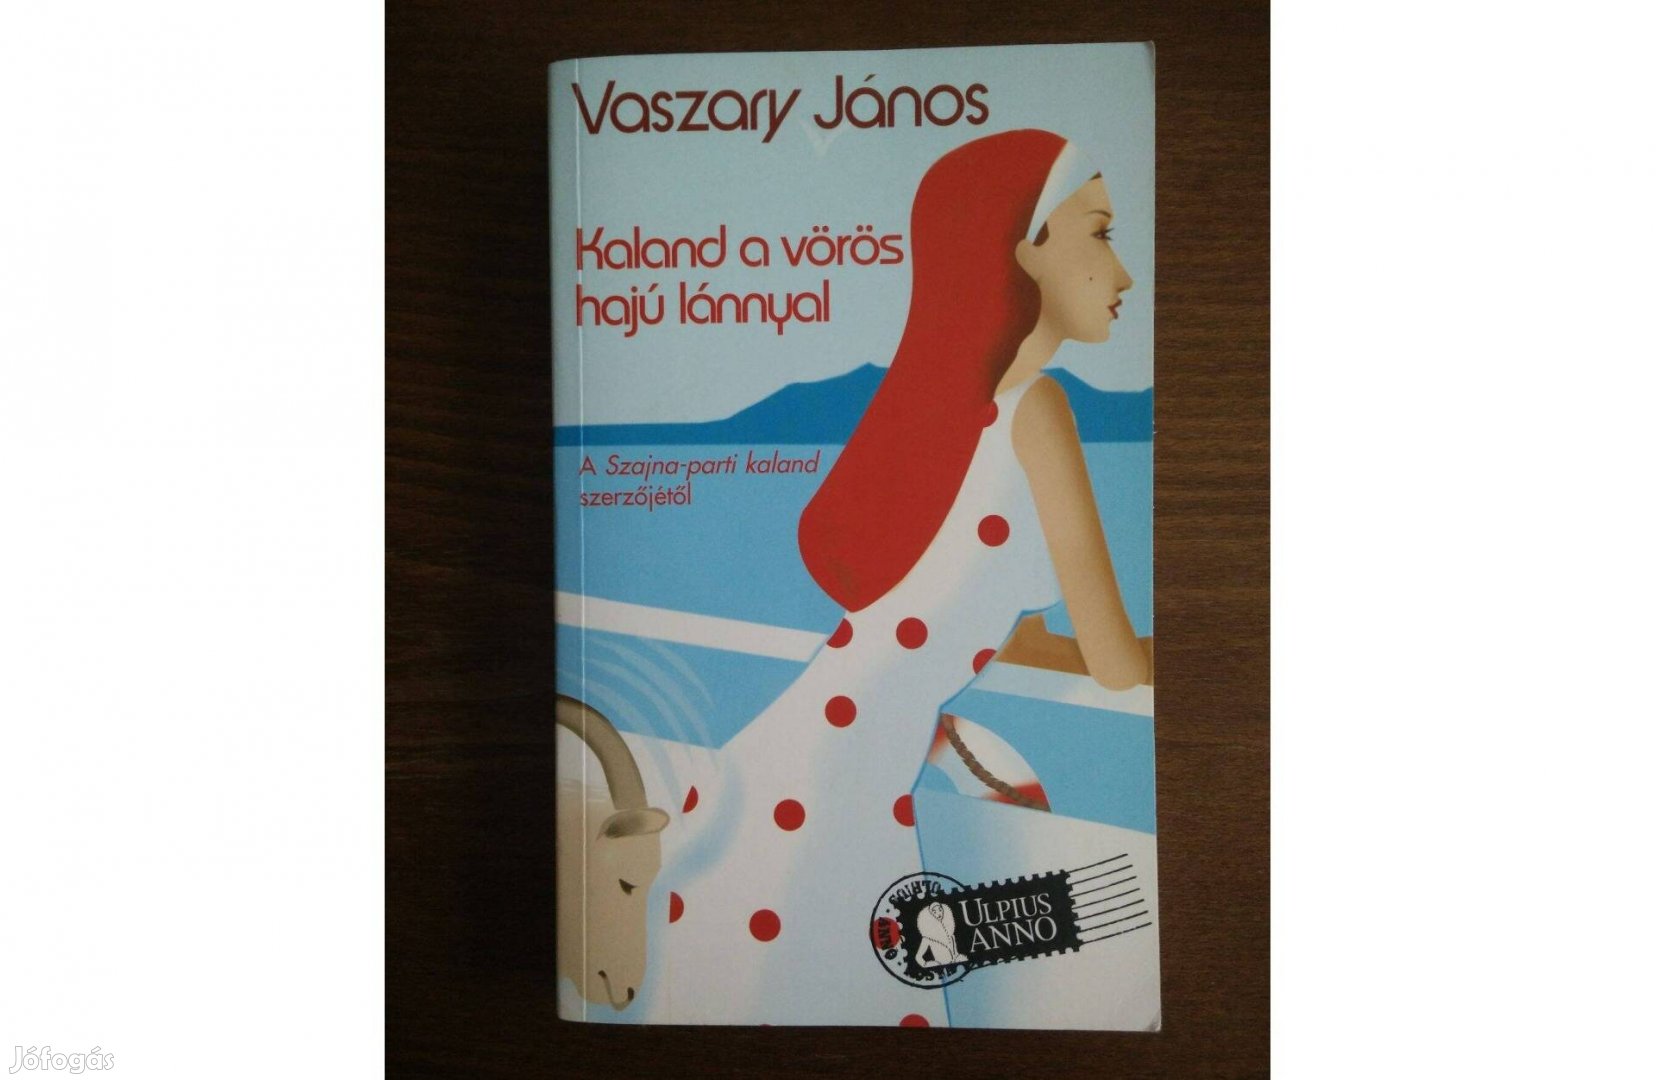 Vaszary János Kaland a vörös hajó lánnyal című könyv